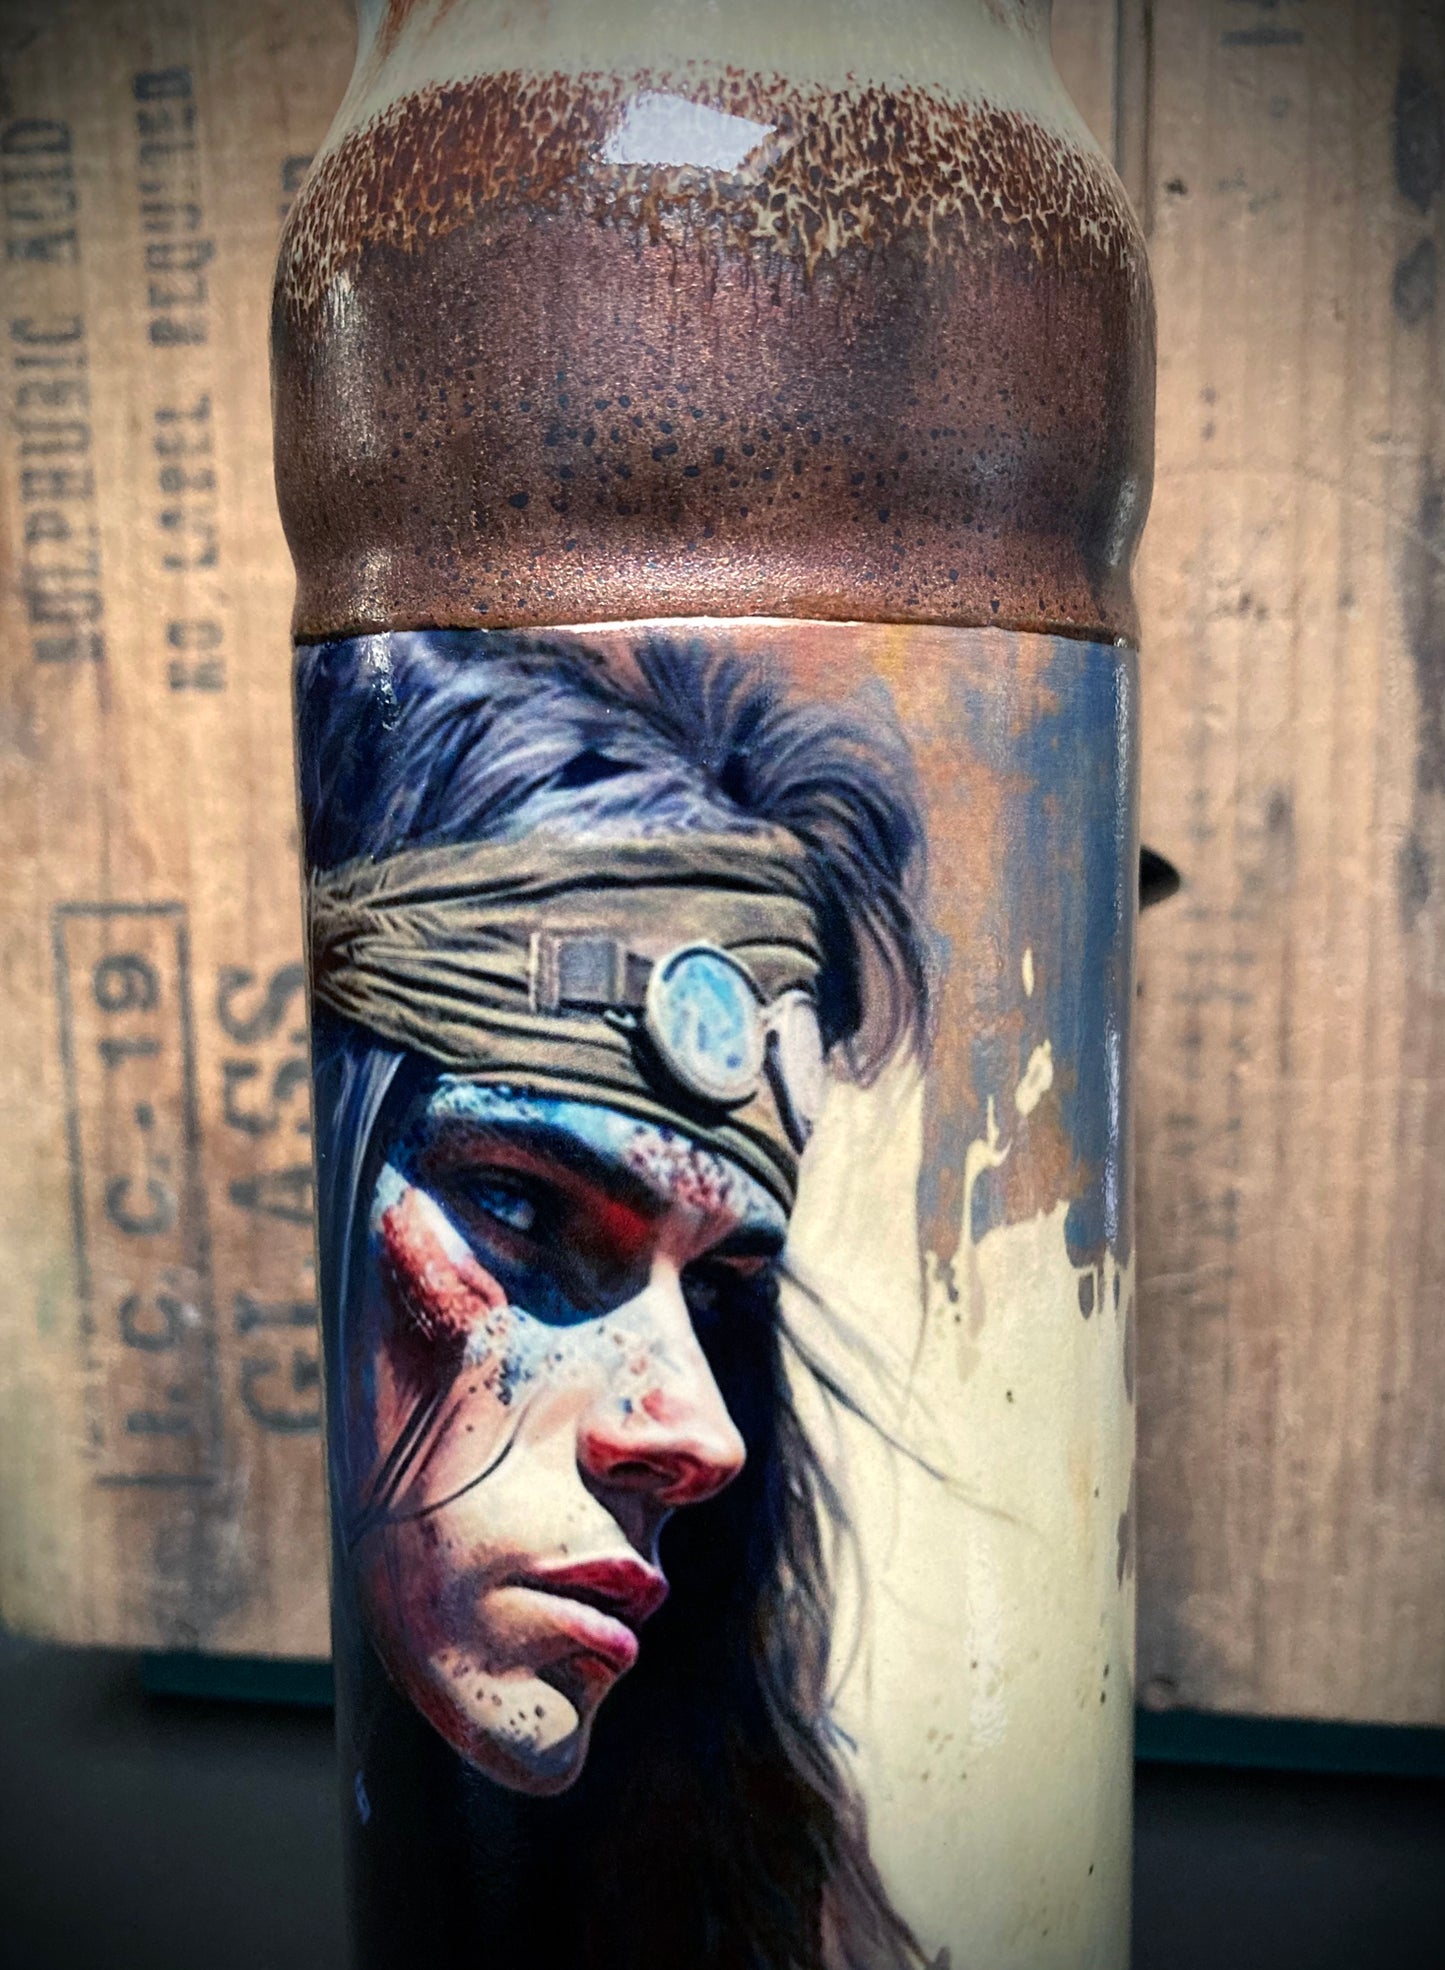 Ceramic Bong - "Outlaws & Free Spirits - War Paint"